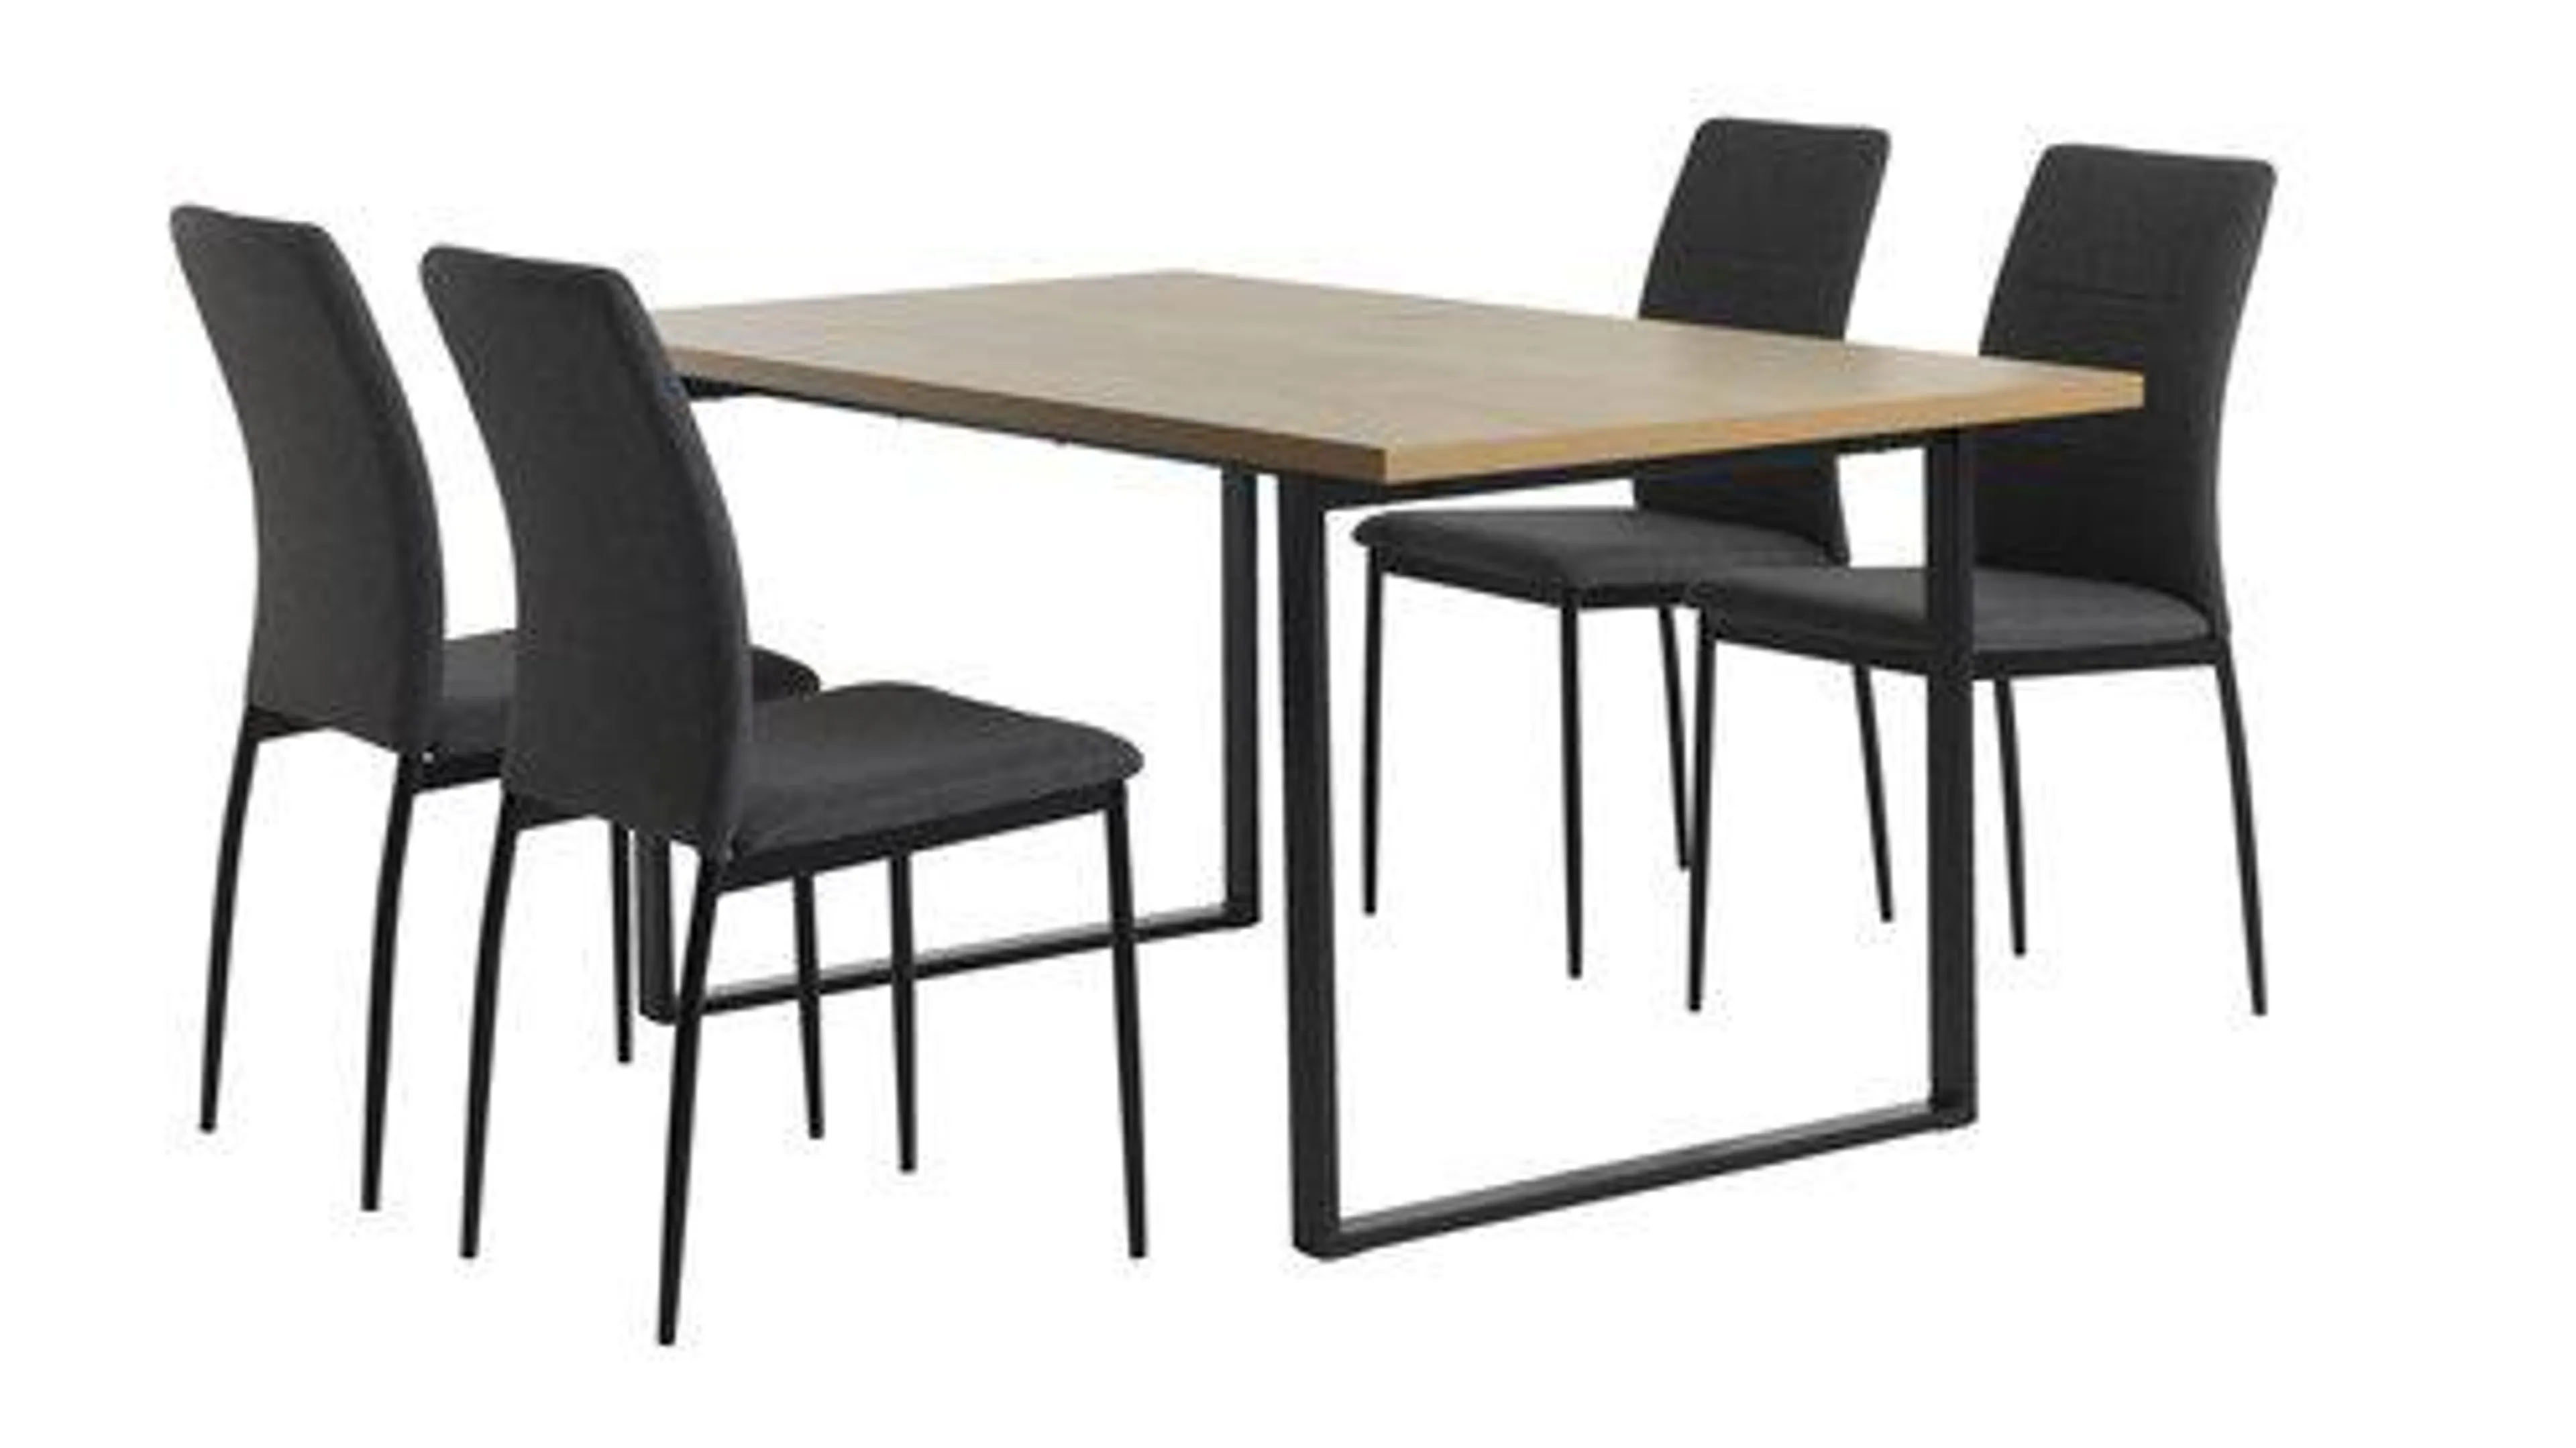 AABENRAA H160 asztal tölgy + 4 TRUSTRUP szék szürke